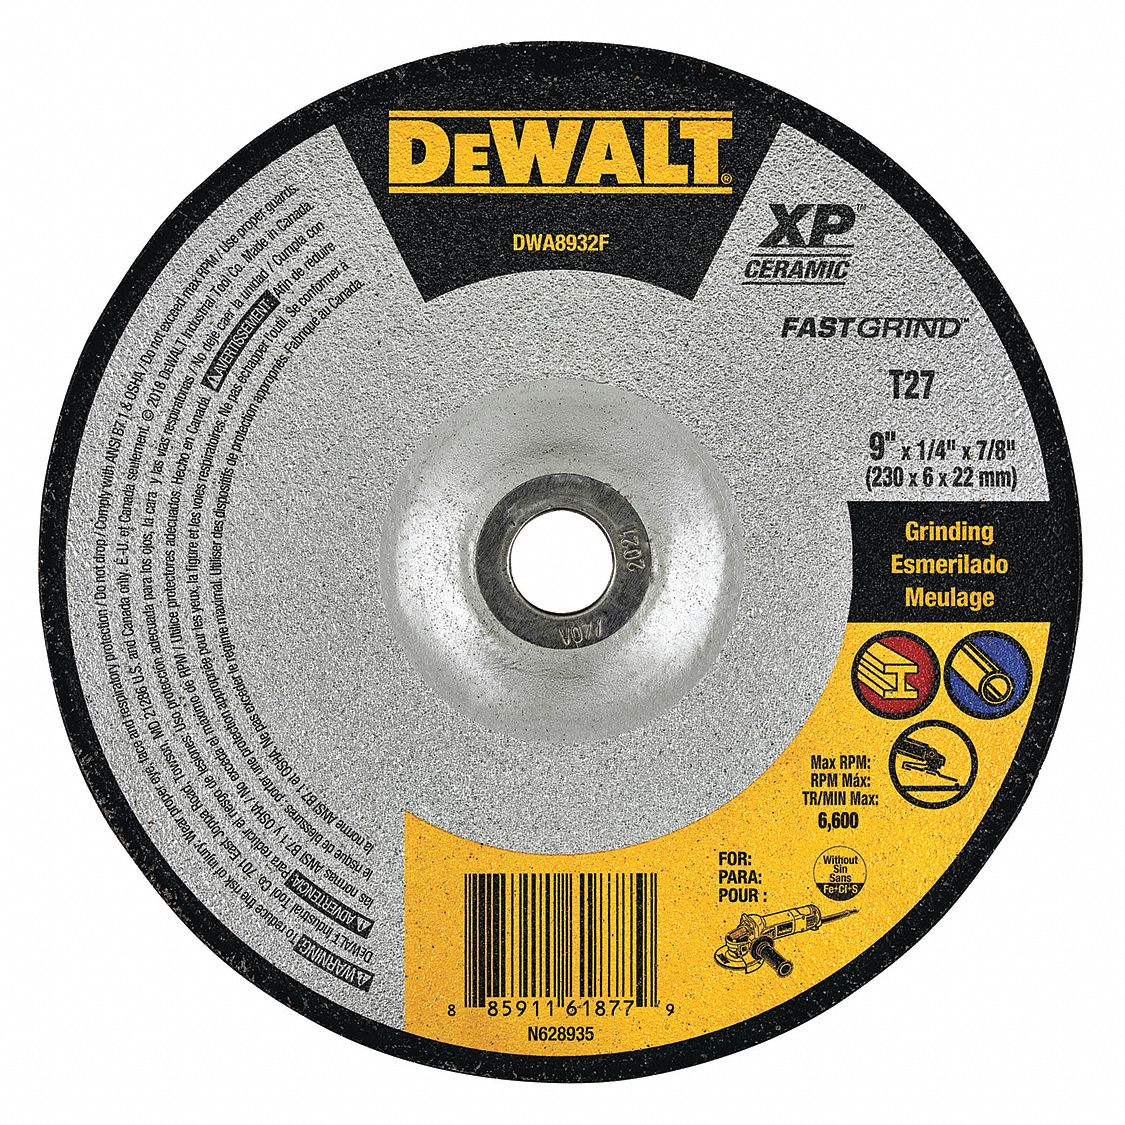 Dewalt 9 In Type 27 Ceramic Abrasive Cut Off Wheel 7 8 In Arbor Hole Size 0 25 In Thickness 493z96 Dwa32f Grainger